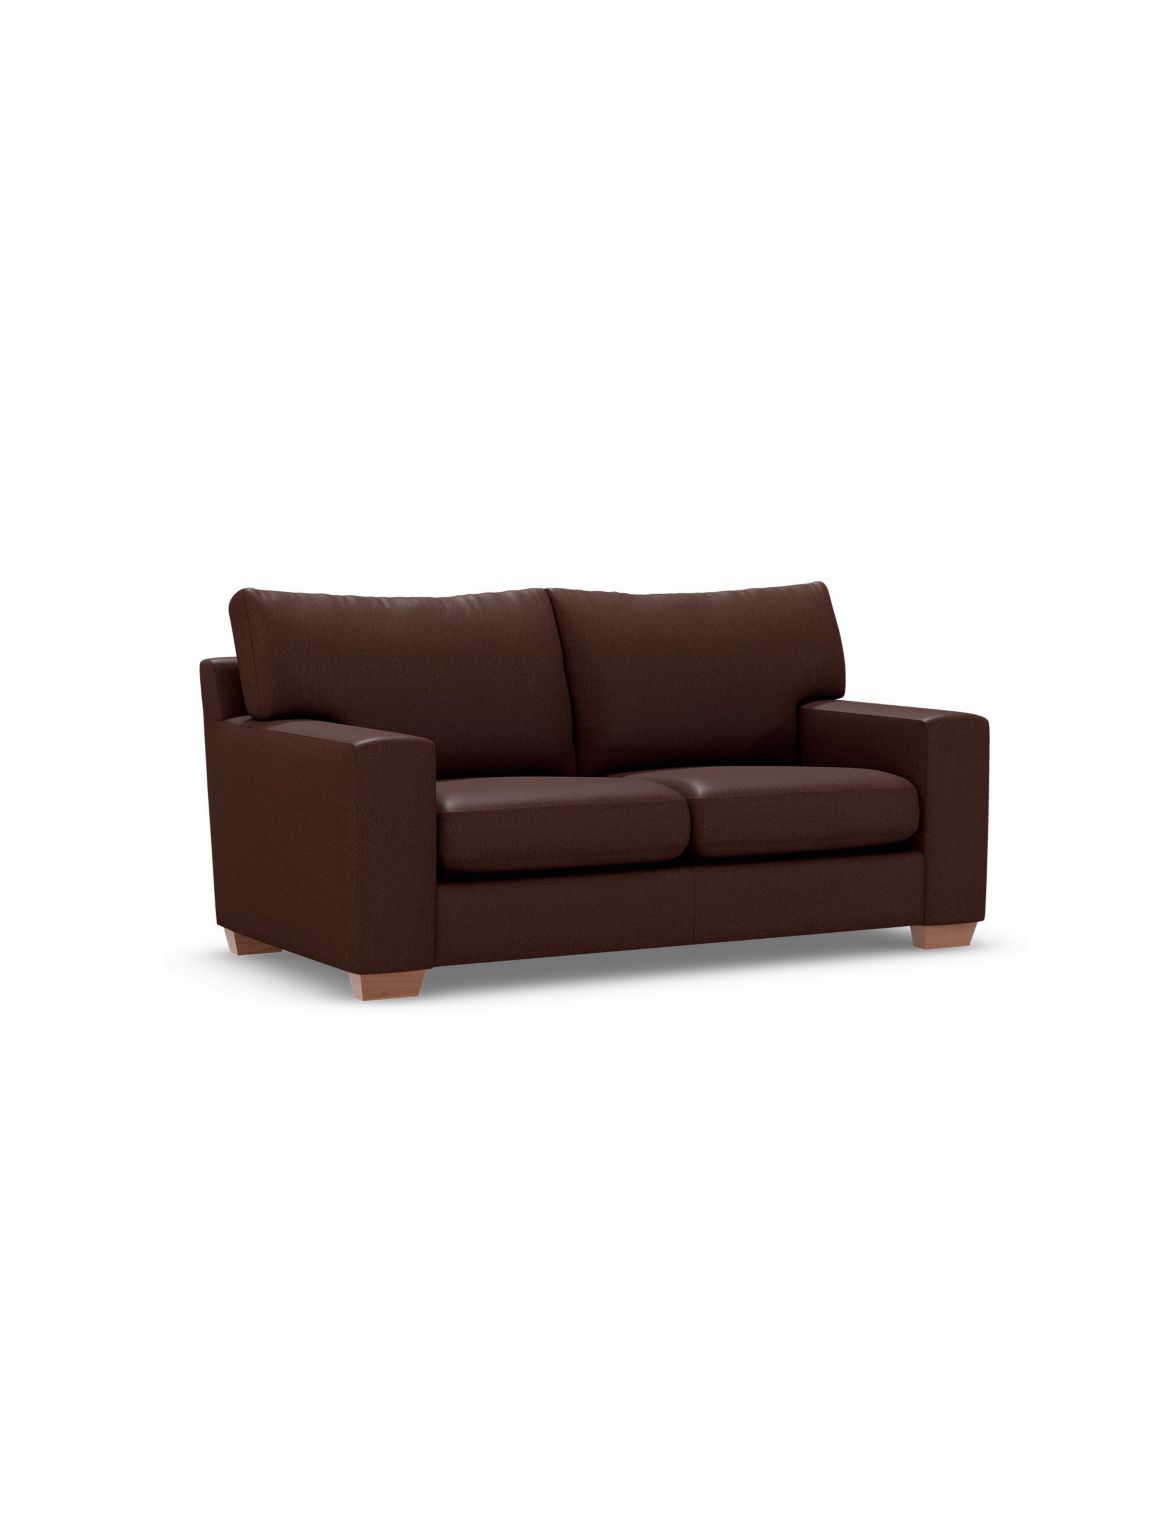 Alfie Small Sofa brown